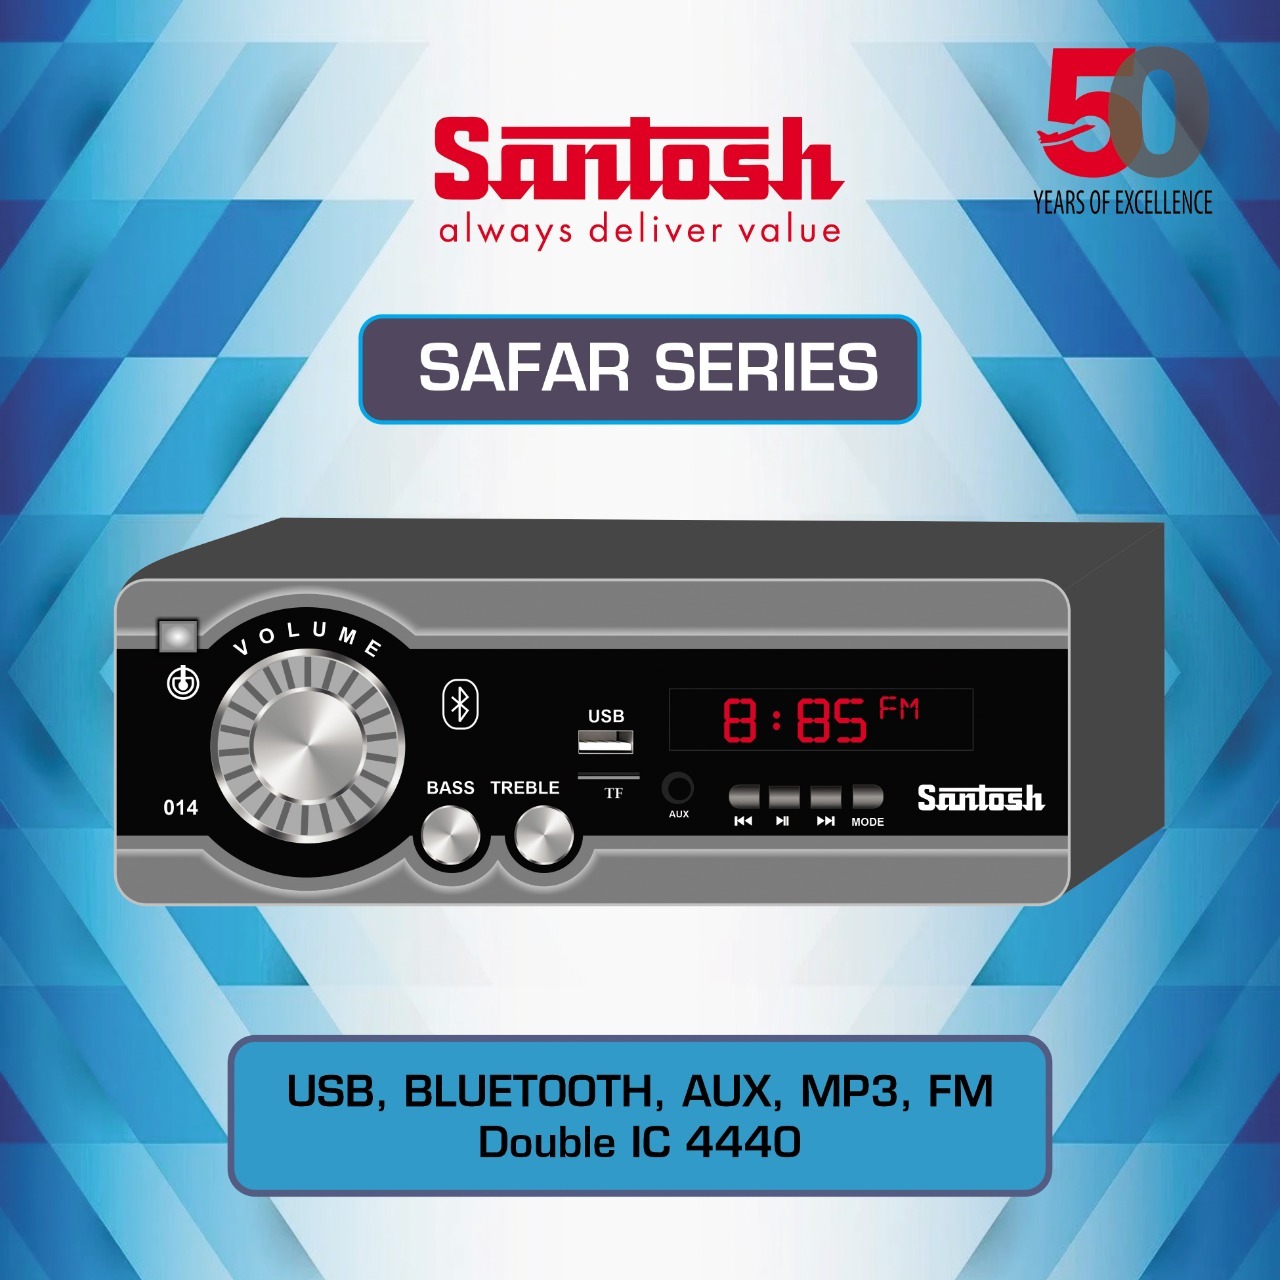 Safar Series Speakers